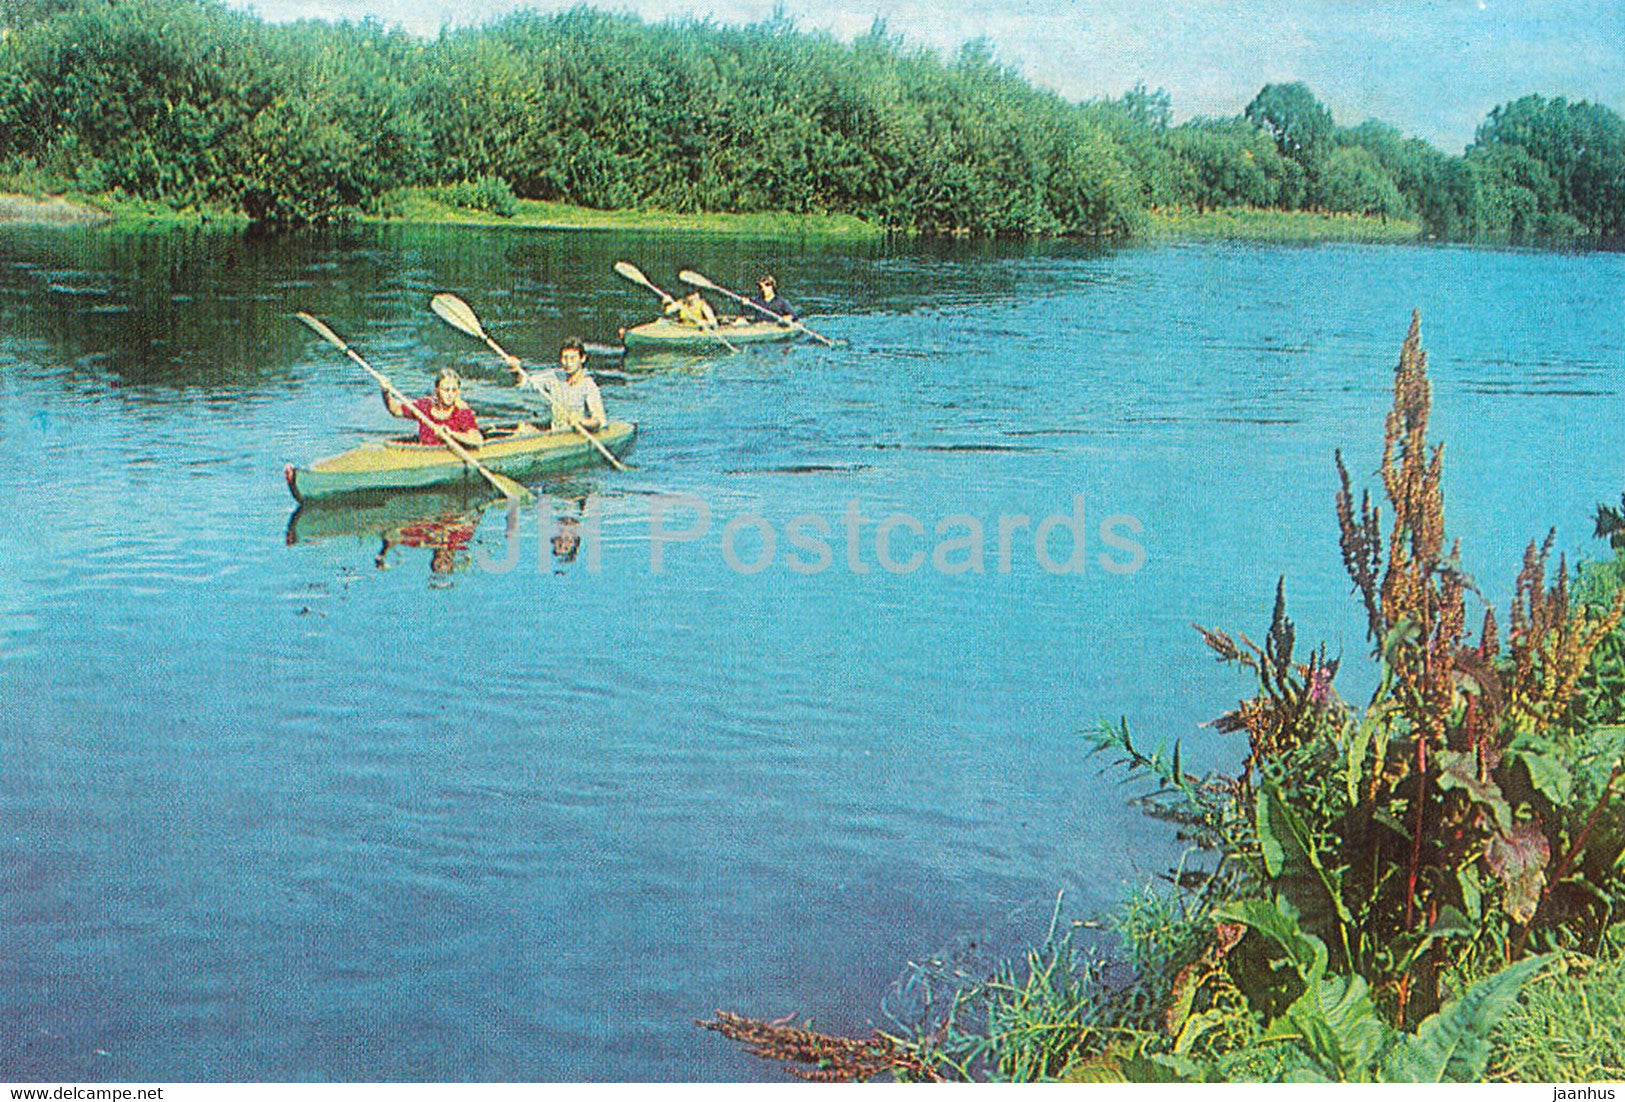 Uralsk - Oral - Ural river - kayak boat - 1984 - Kazakhstan USSR - unused - JH Postcards